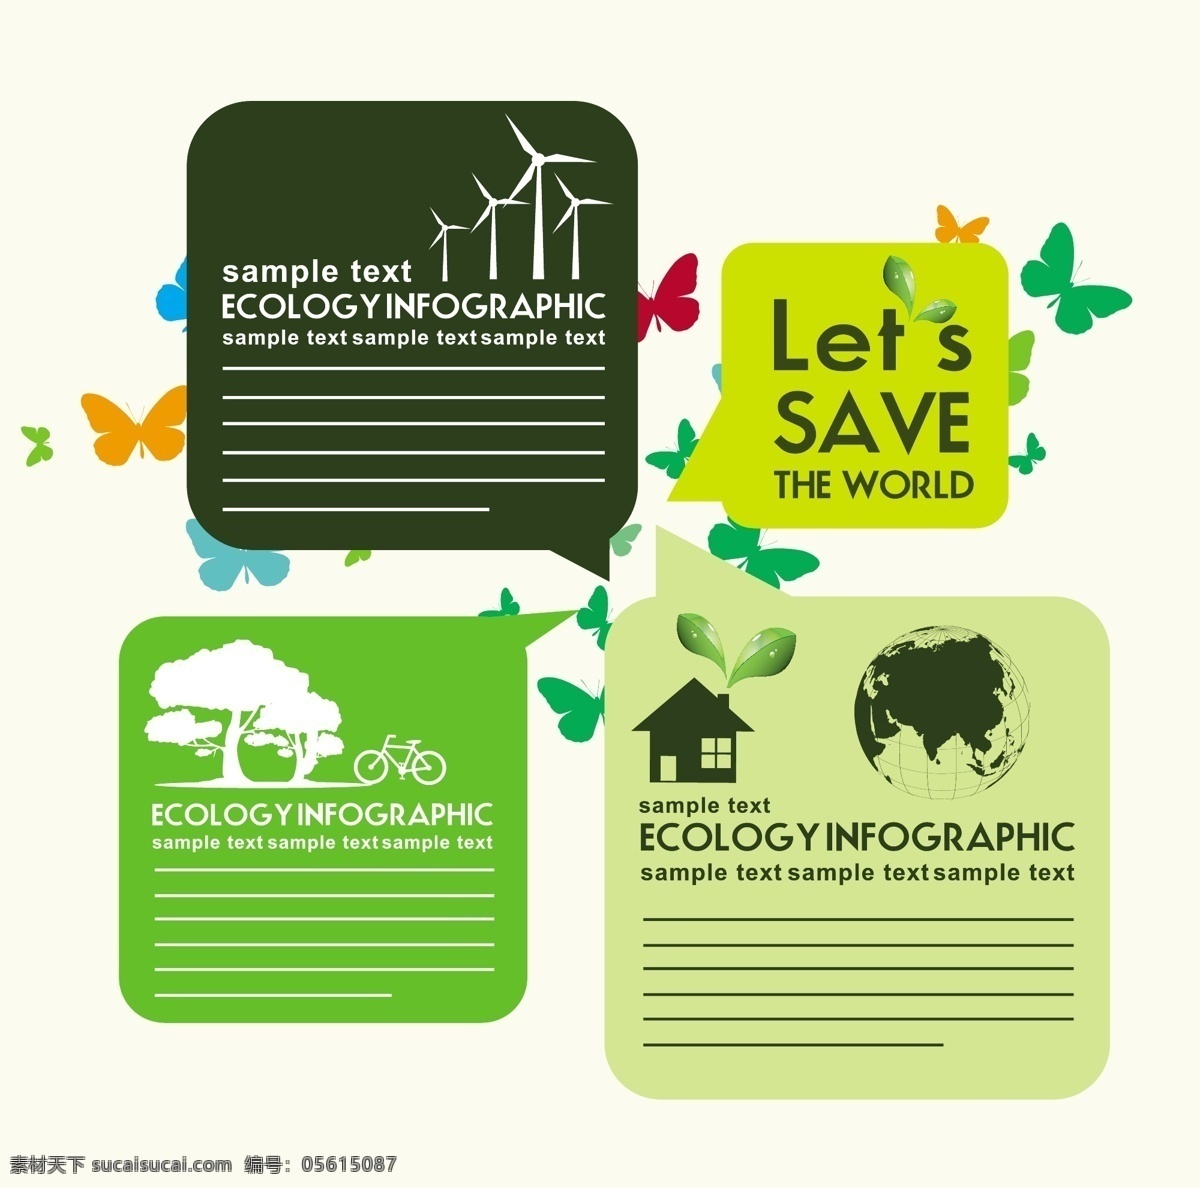 生态信息图表 环保 创意设计 eco 绿色 蝴蝶图案 循环 能源 节能 低碳 生态 回收 环保标志 ppt素材 底纹背景 商务金融 商业插画 白色